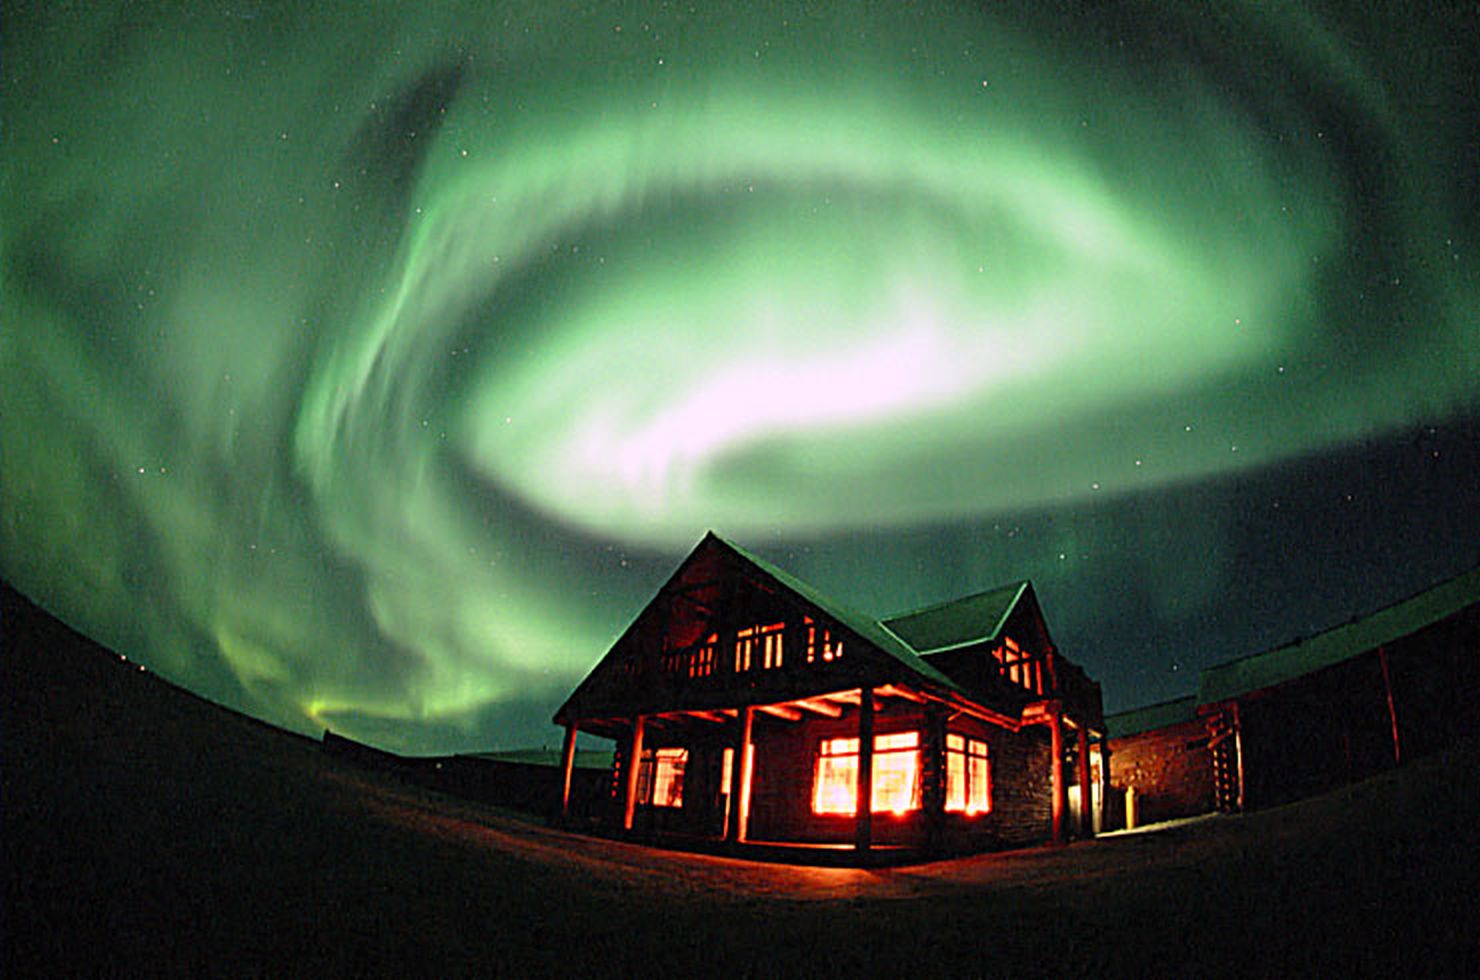 Qual a melhor época para visitar a Islândia e ver Aurora Boreal